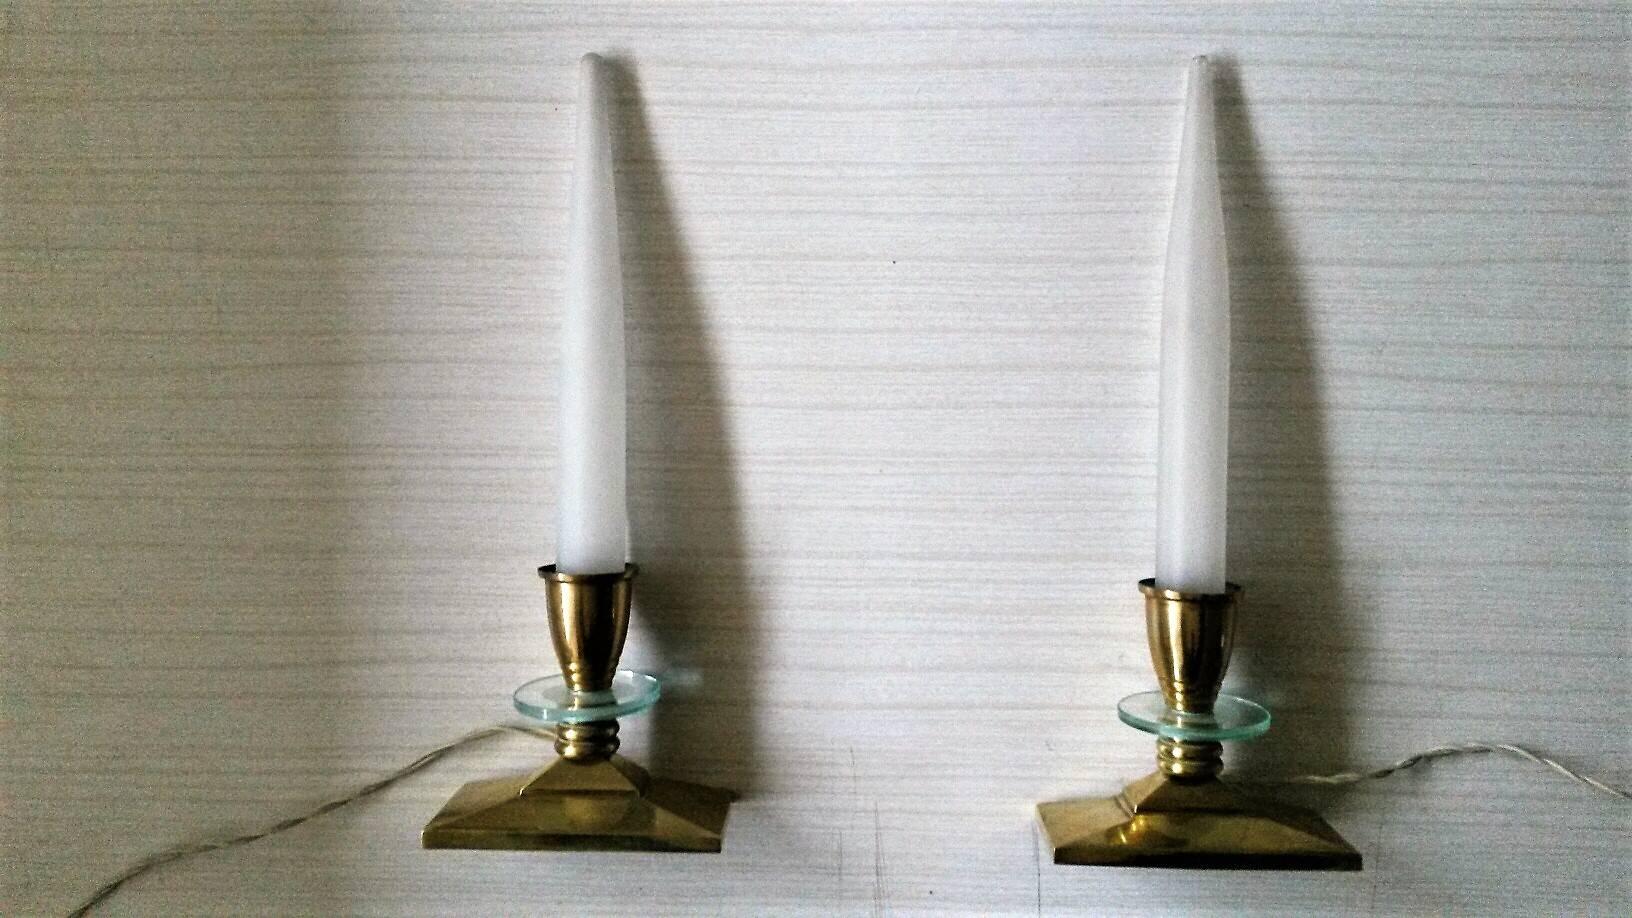 Paire très raffinée de lampes de table Art Déco françaises en bronze doré dans un style élégant de chandelier avec un décor rond en verre sablé et des tulipes en verre dépoli satiné,
vers 1935.
En parfait état, la partie électrique a été vérifiée